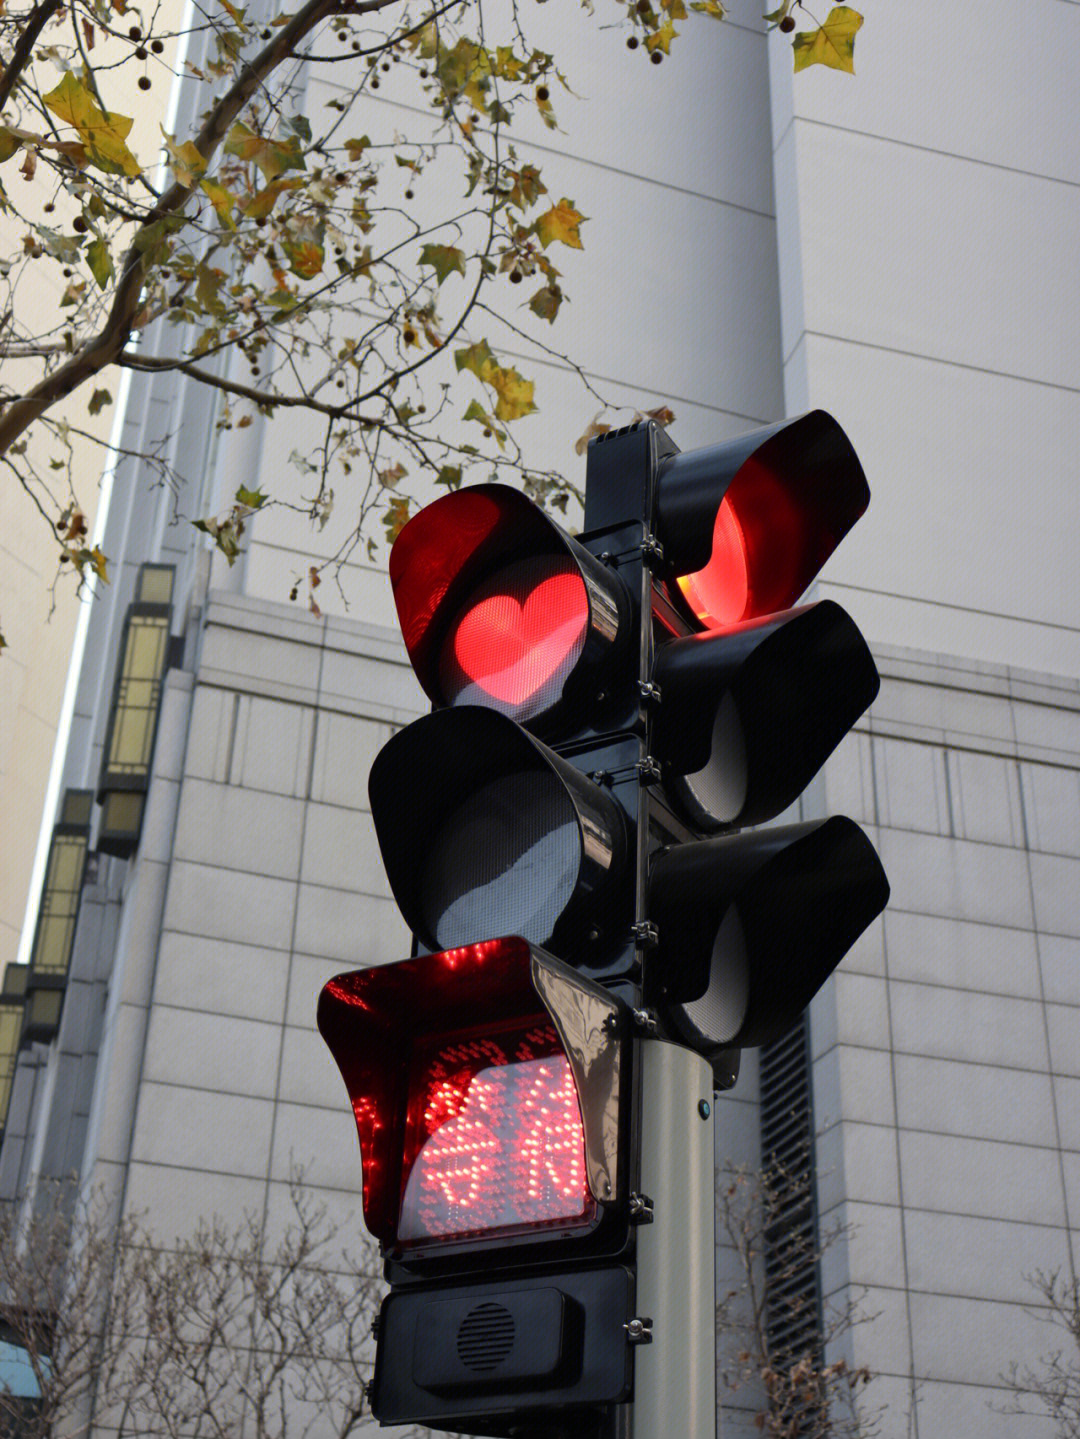 北京现爱心状红绿灯图片